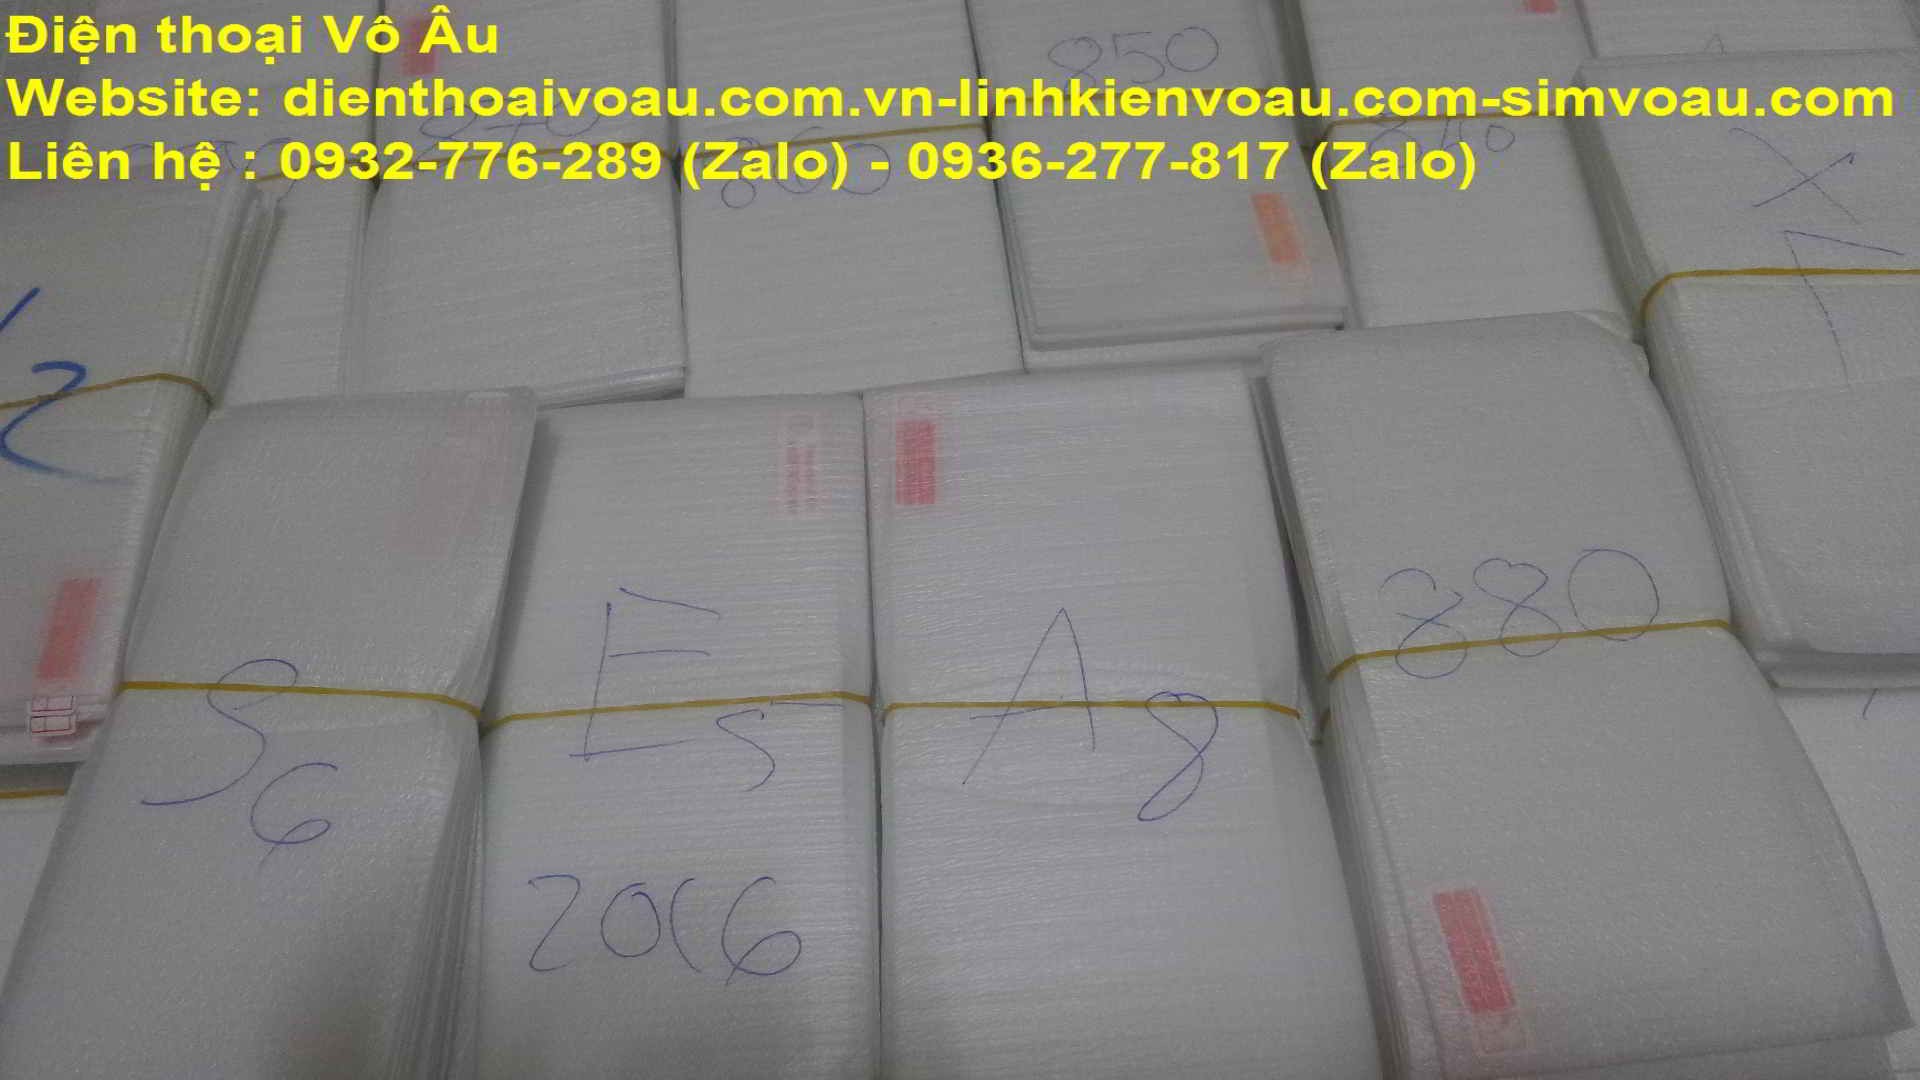 Chuyên phân phối và cung cấp nokia 1280 chính hãng giá rẻ nhất Sài Gòn - 28